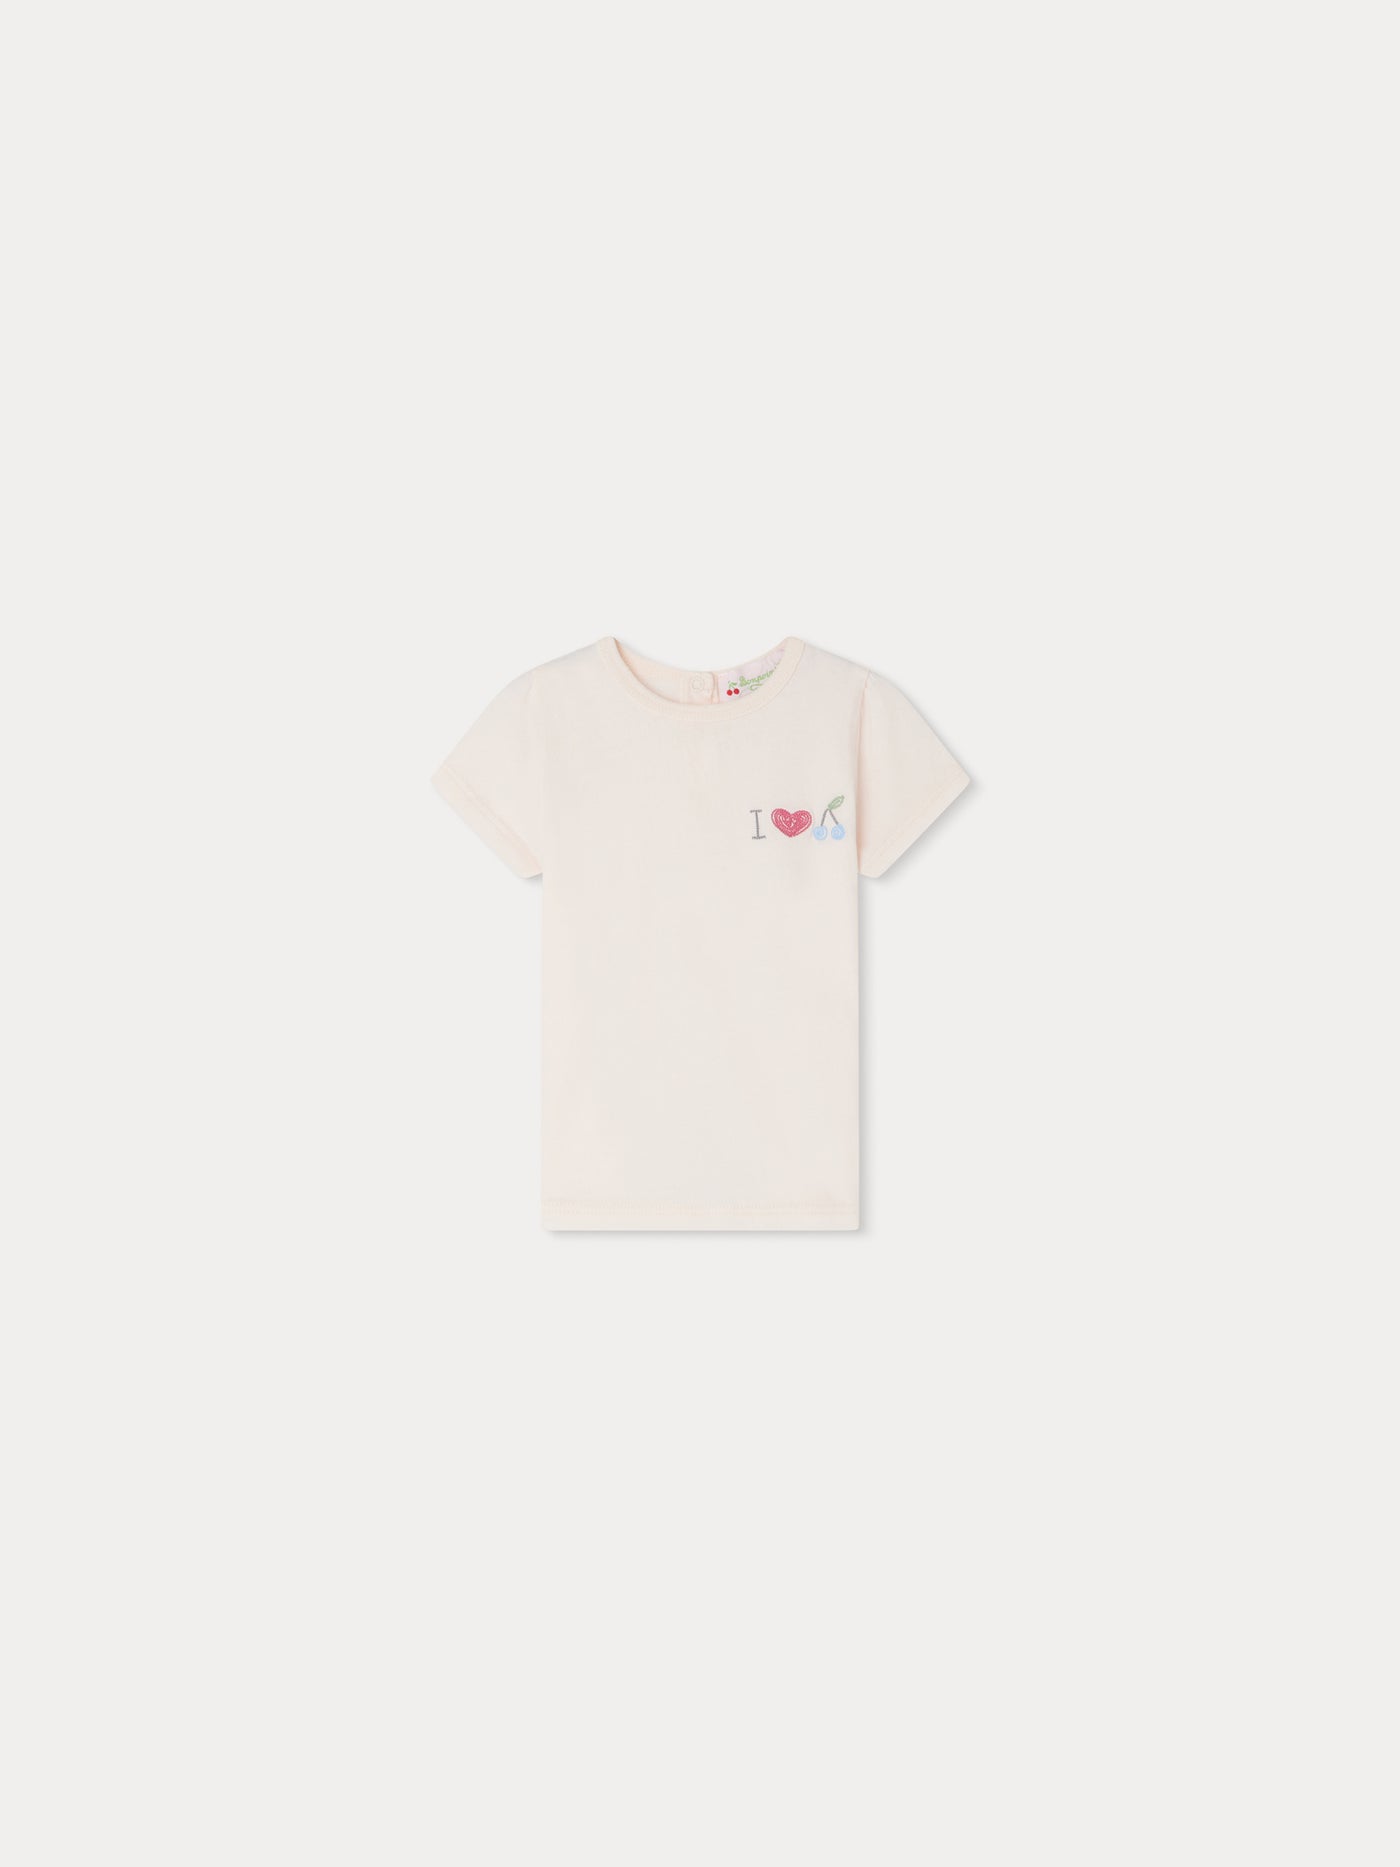 Cira T-shirt petal pink